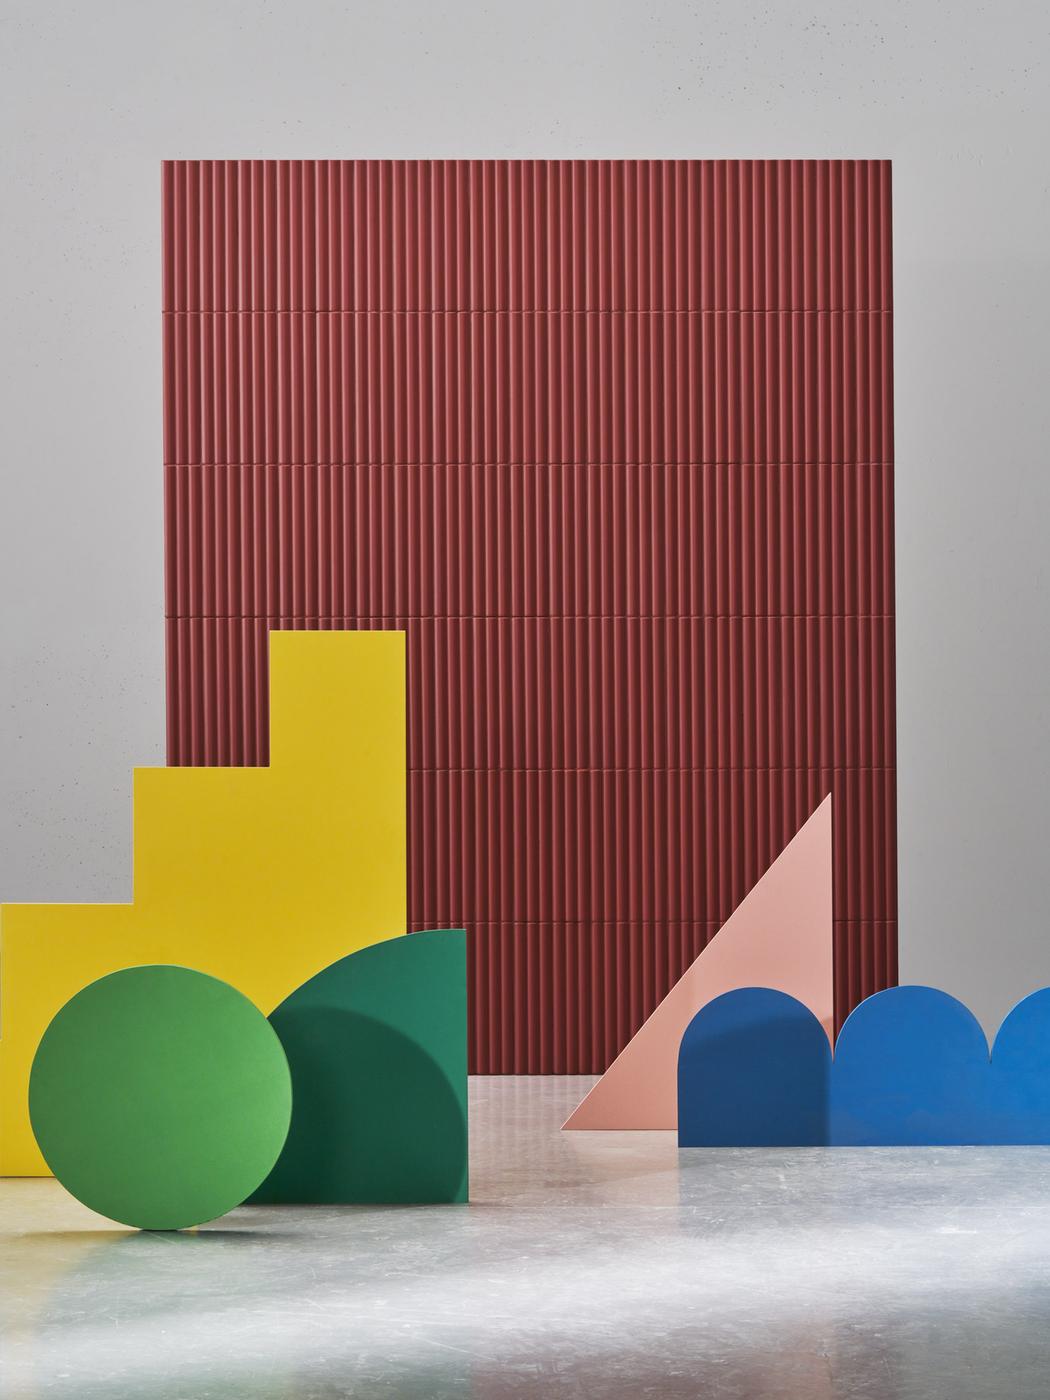 Carrelage uni rouge sans motifs sur mur dans espace moderne avec sol en béton et formes géométriques colorées